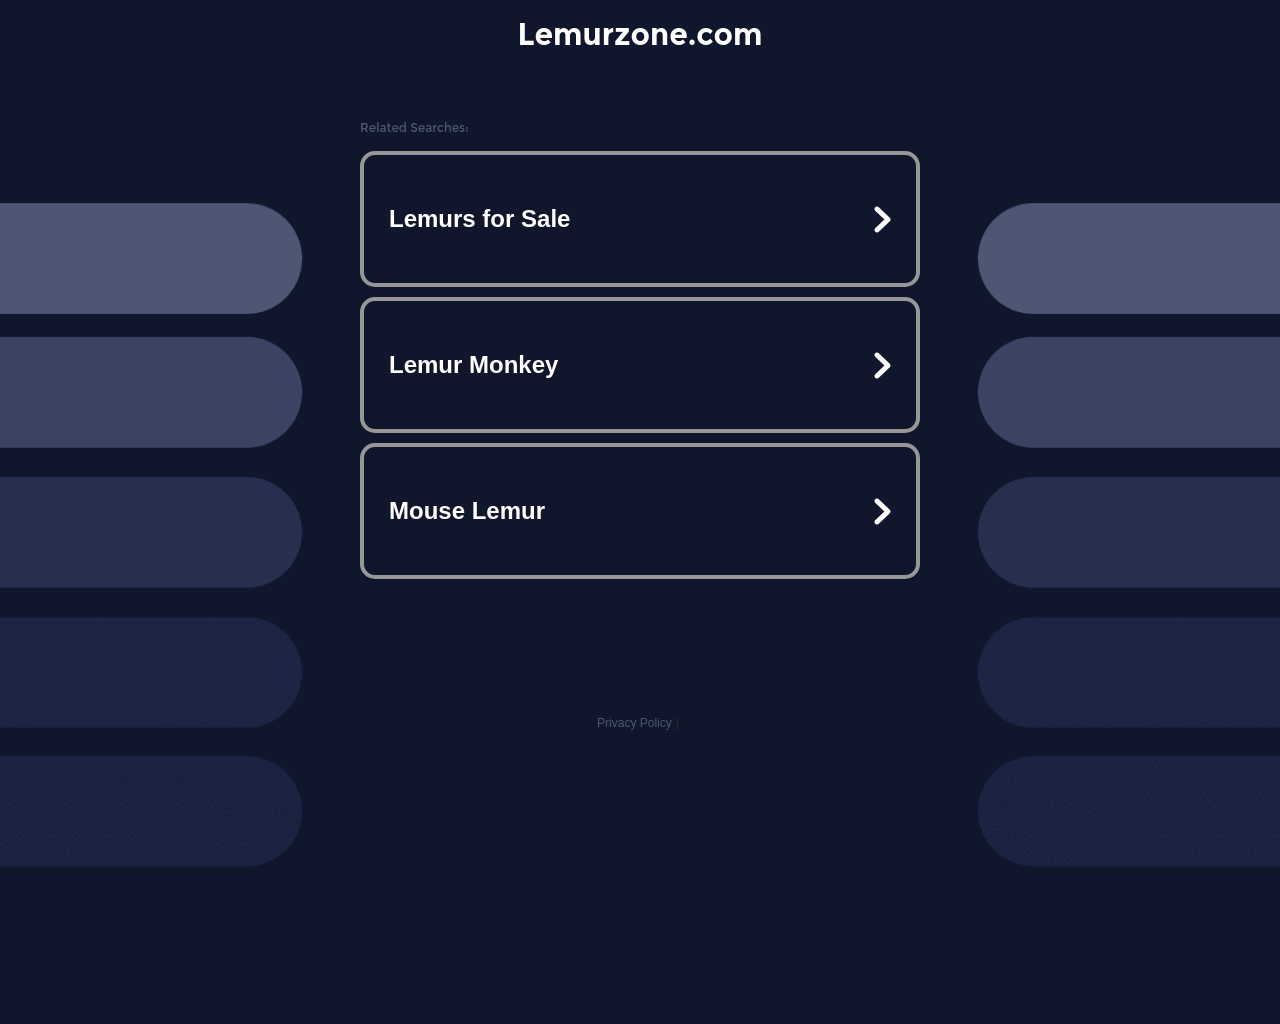 lemurzone.com